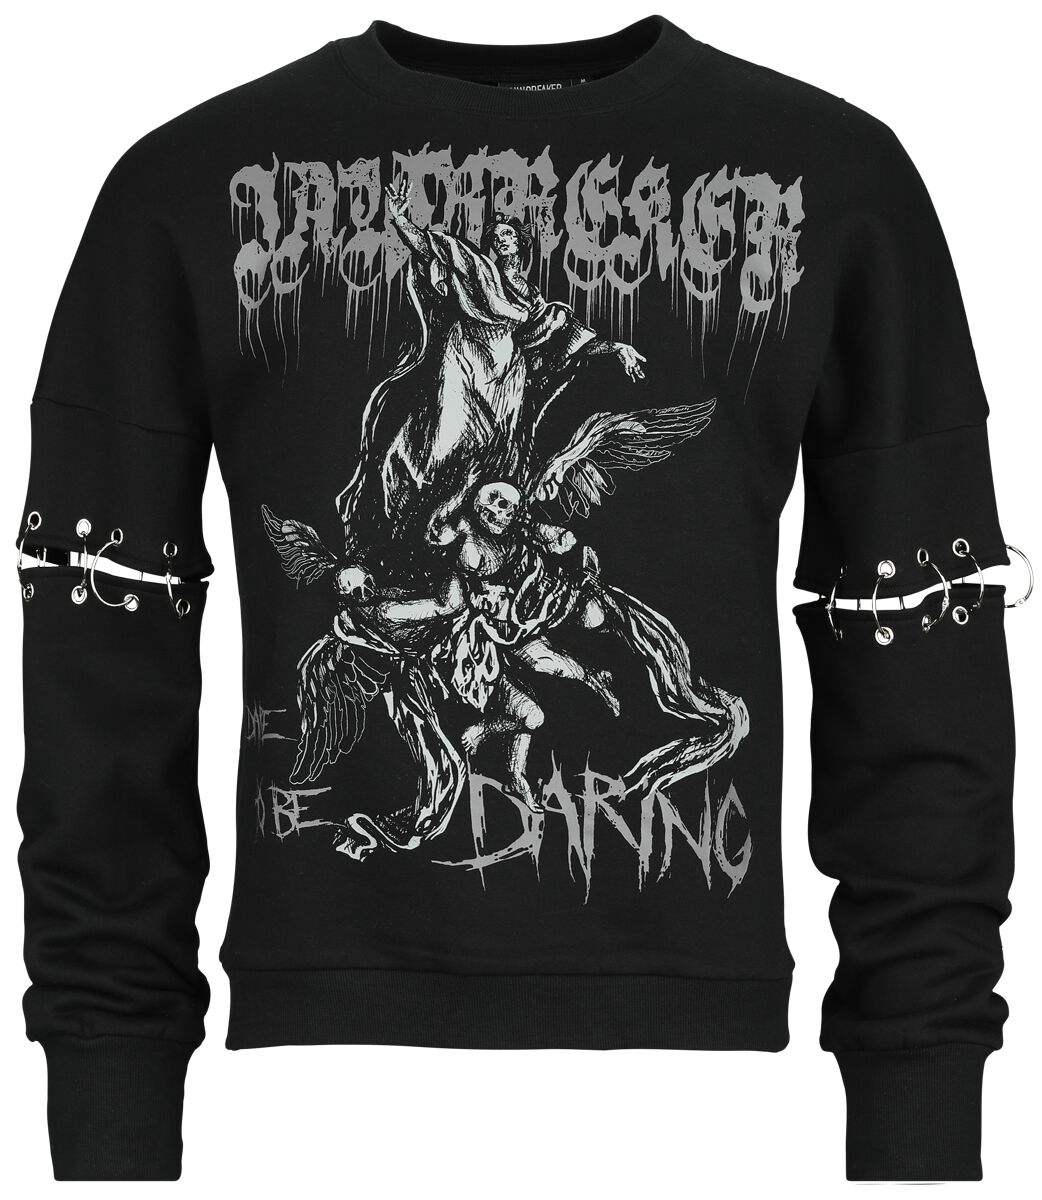 Jawbreaker - Gothic Sweatshirt - Dare To Be Daring - S bis XXL - Größe L - schwarz